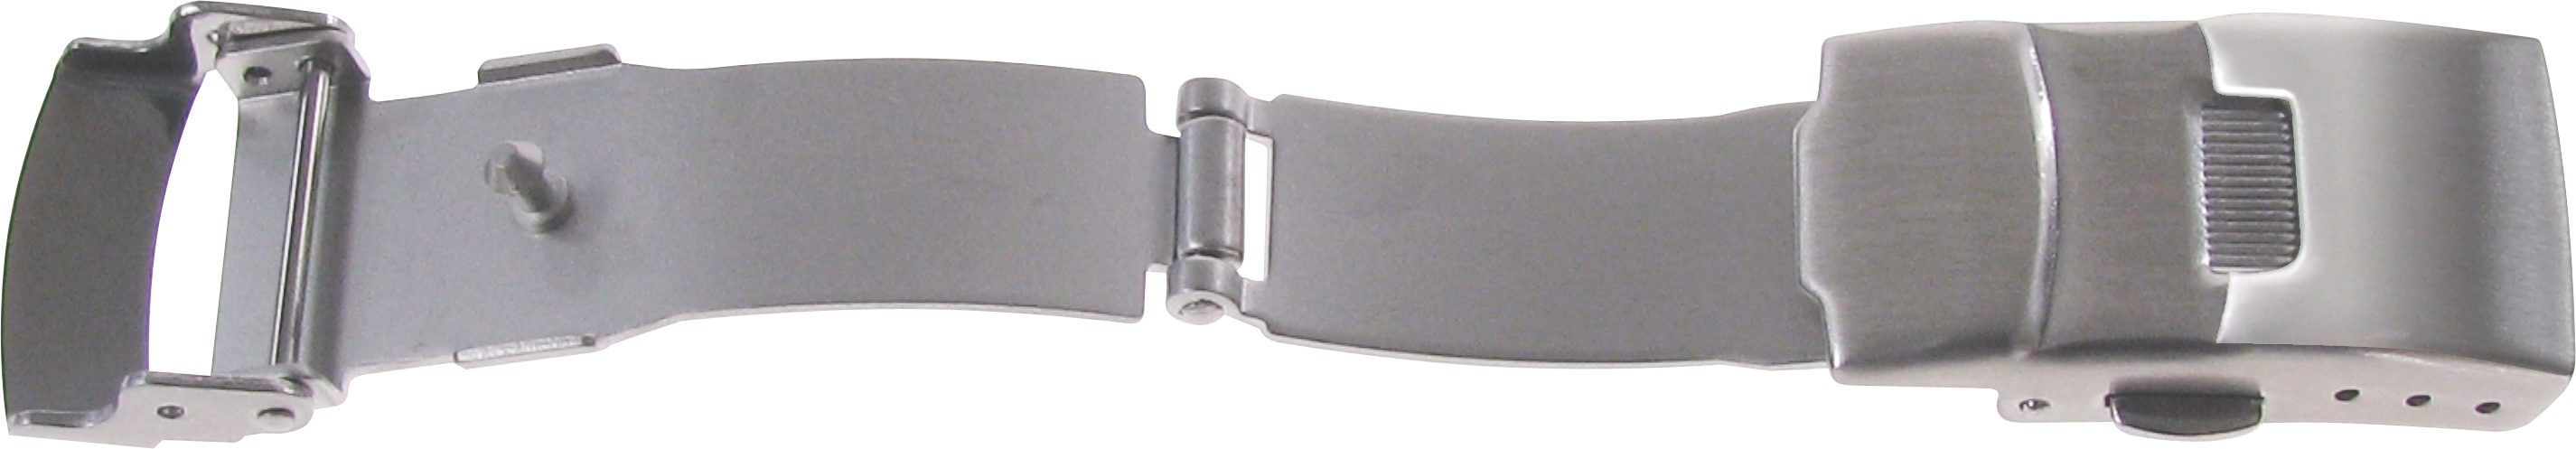 Faltschließe Edelstahl 14mm Stahl satiniert mit Drücker und Sicherheitsbügel